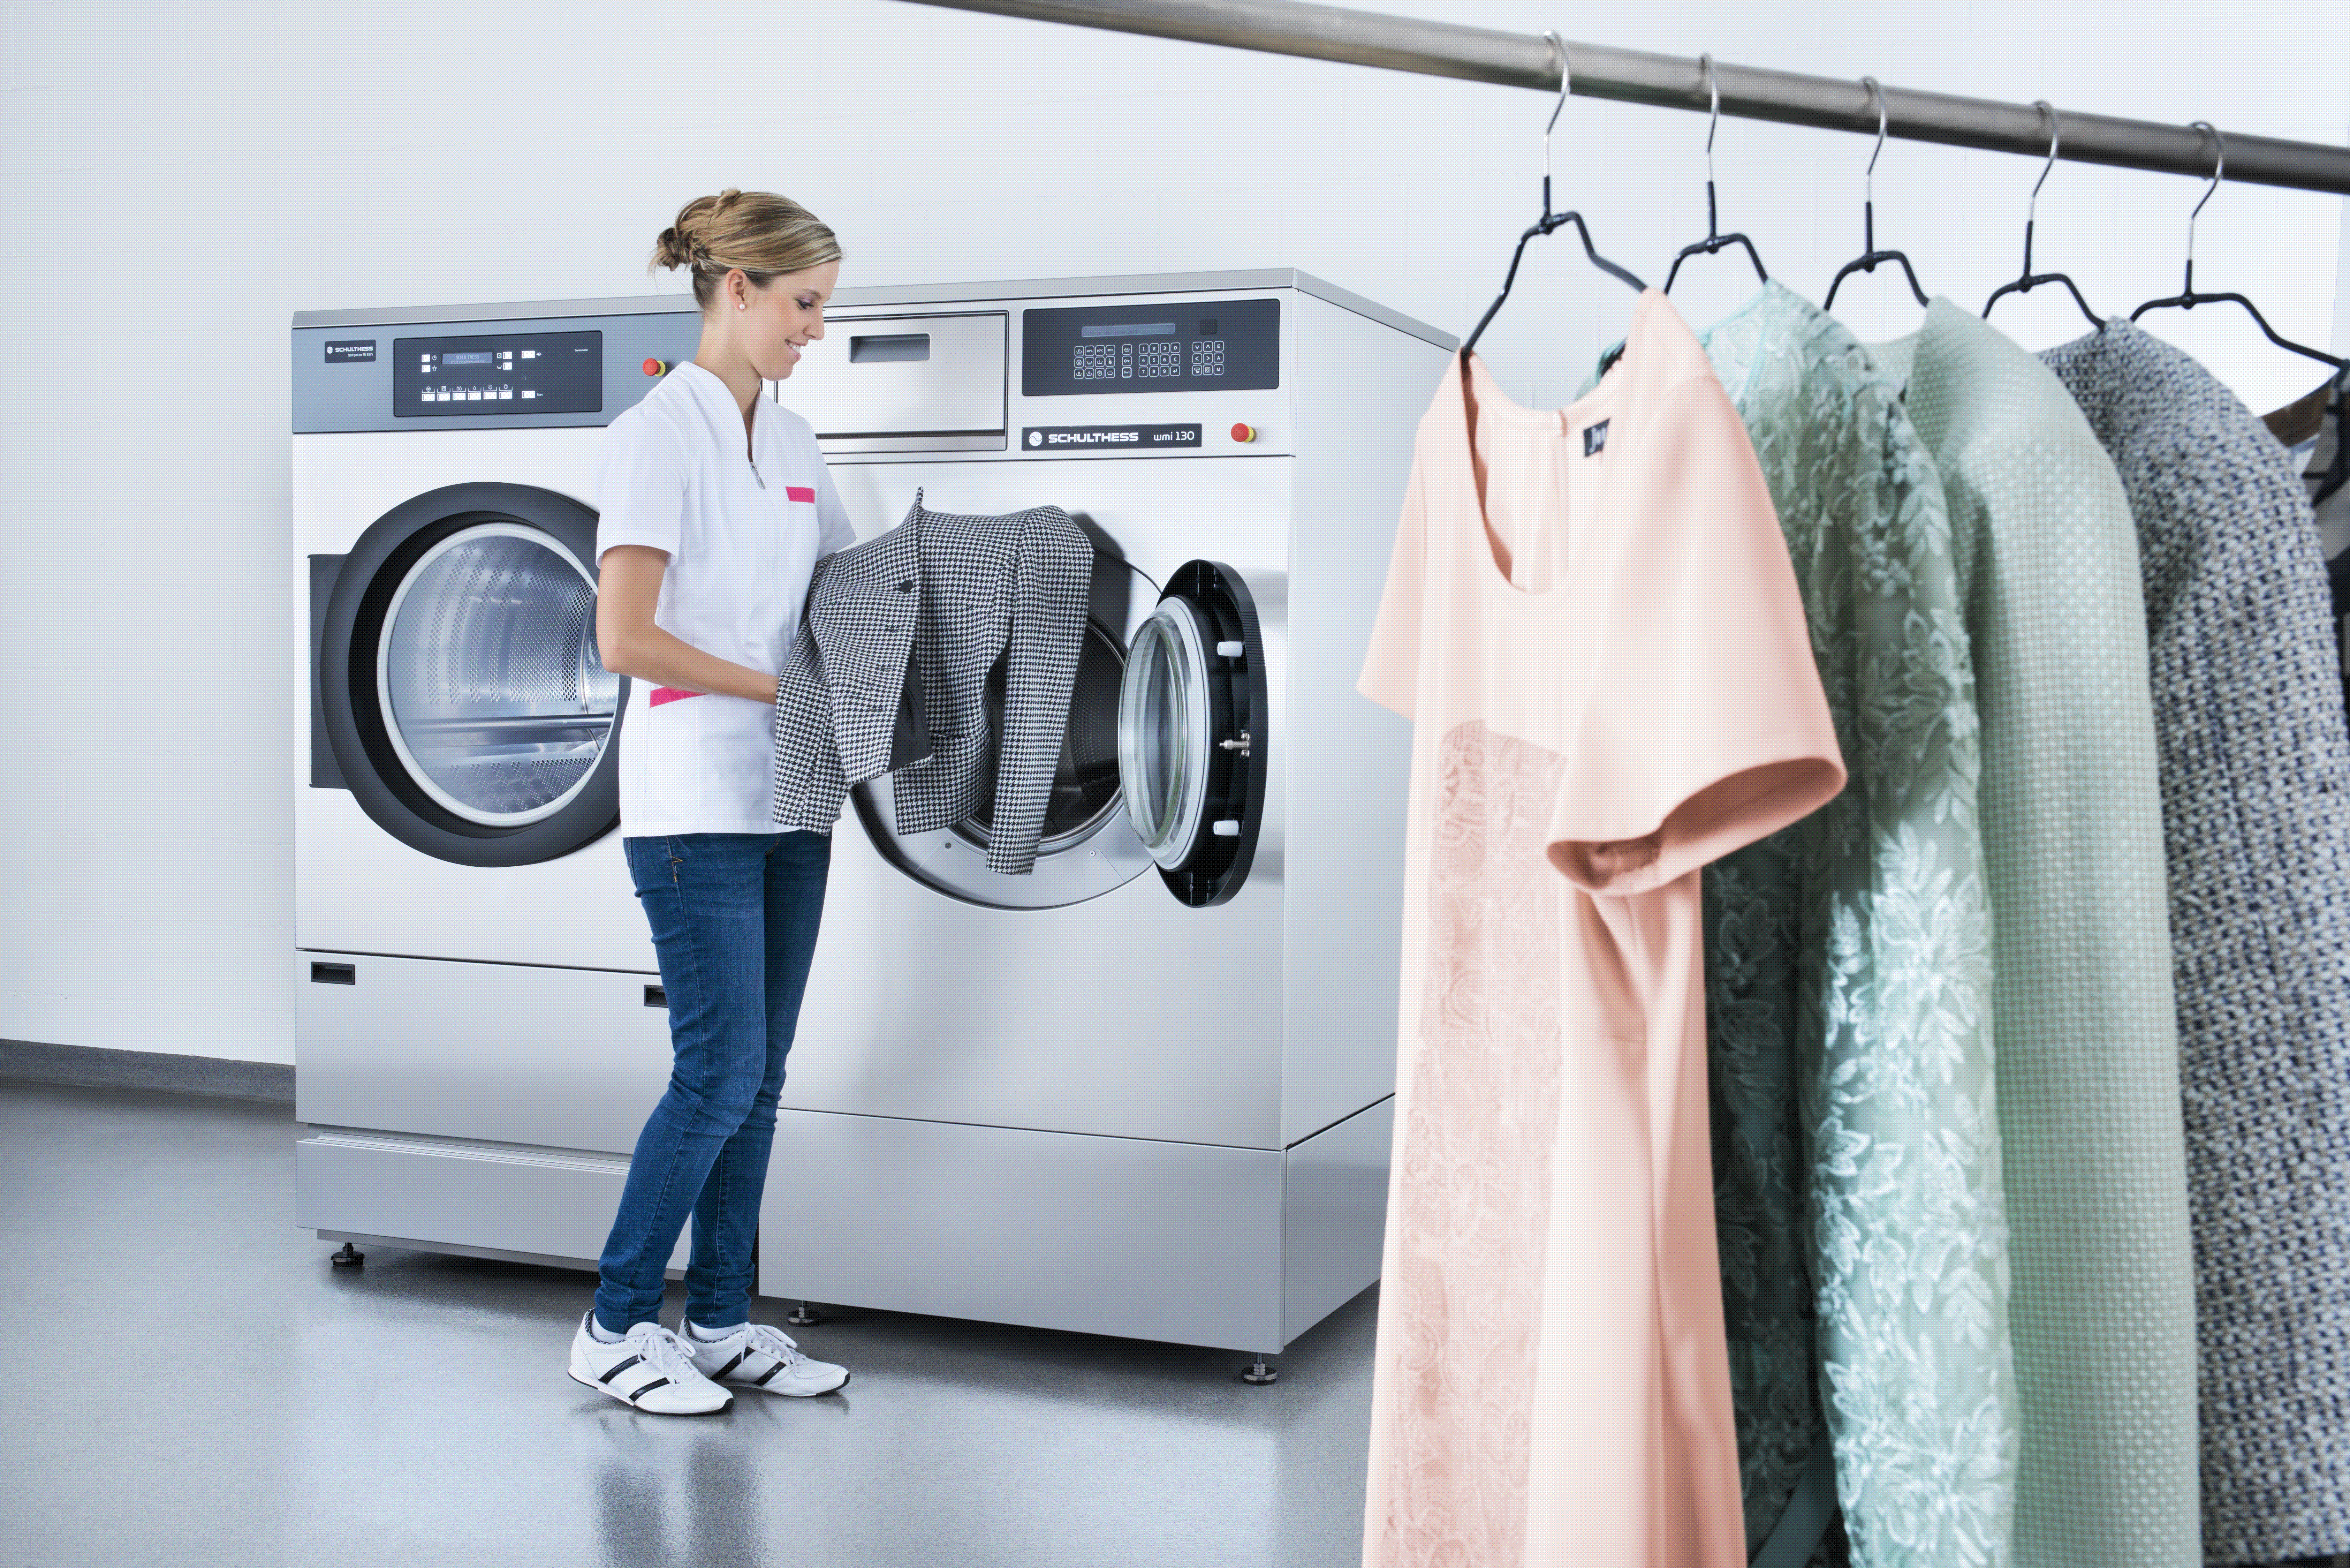 Laundry cleaning. Вещи в прачечной. Химчистка одежды. Прачечная одежда. Химчистка вещей.